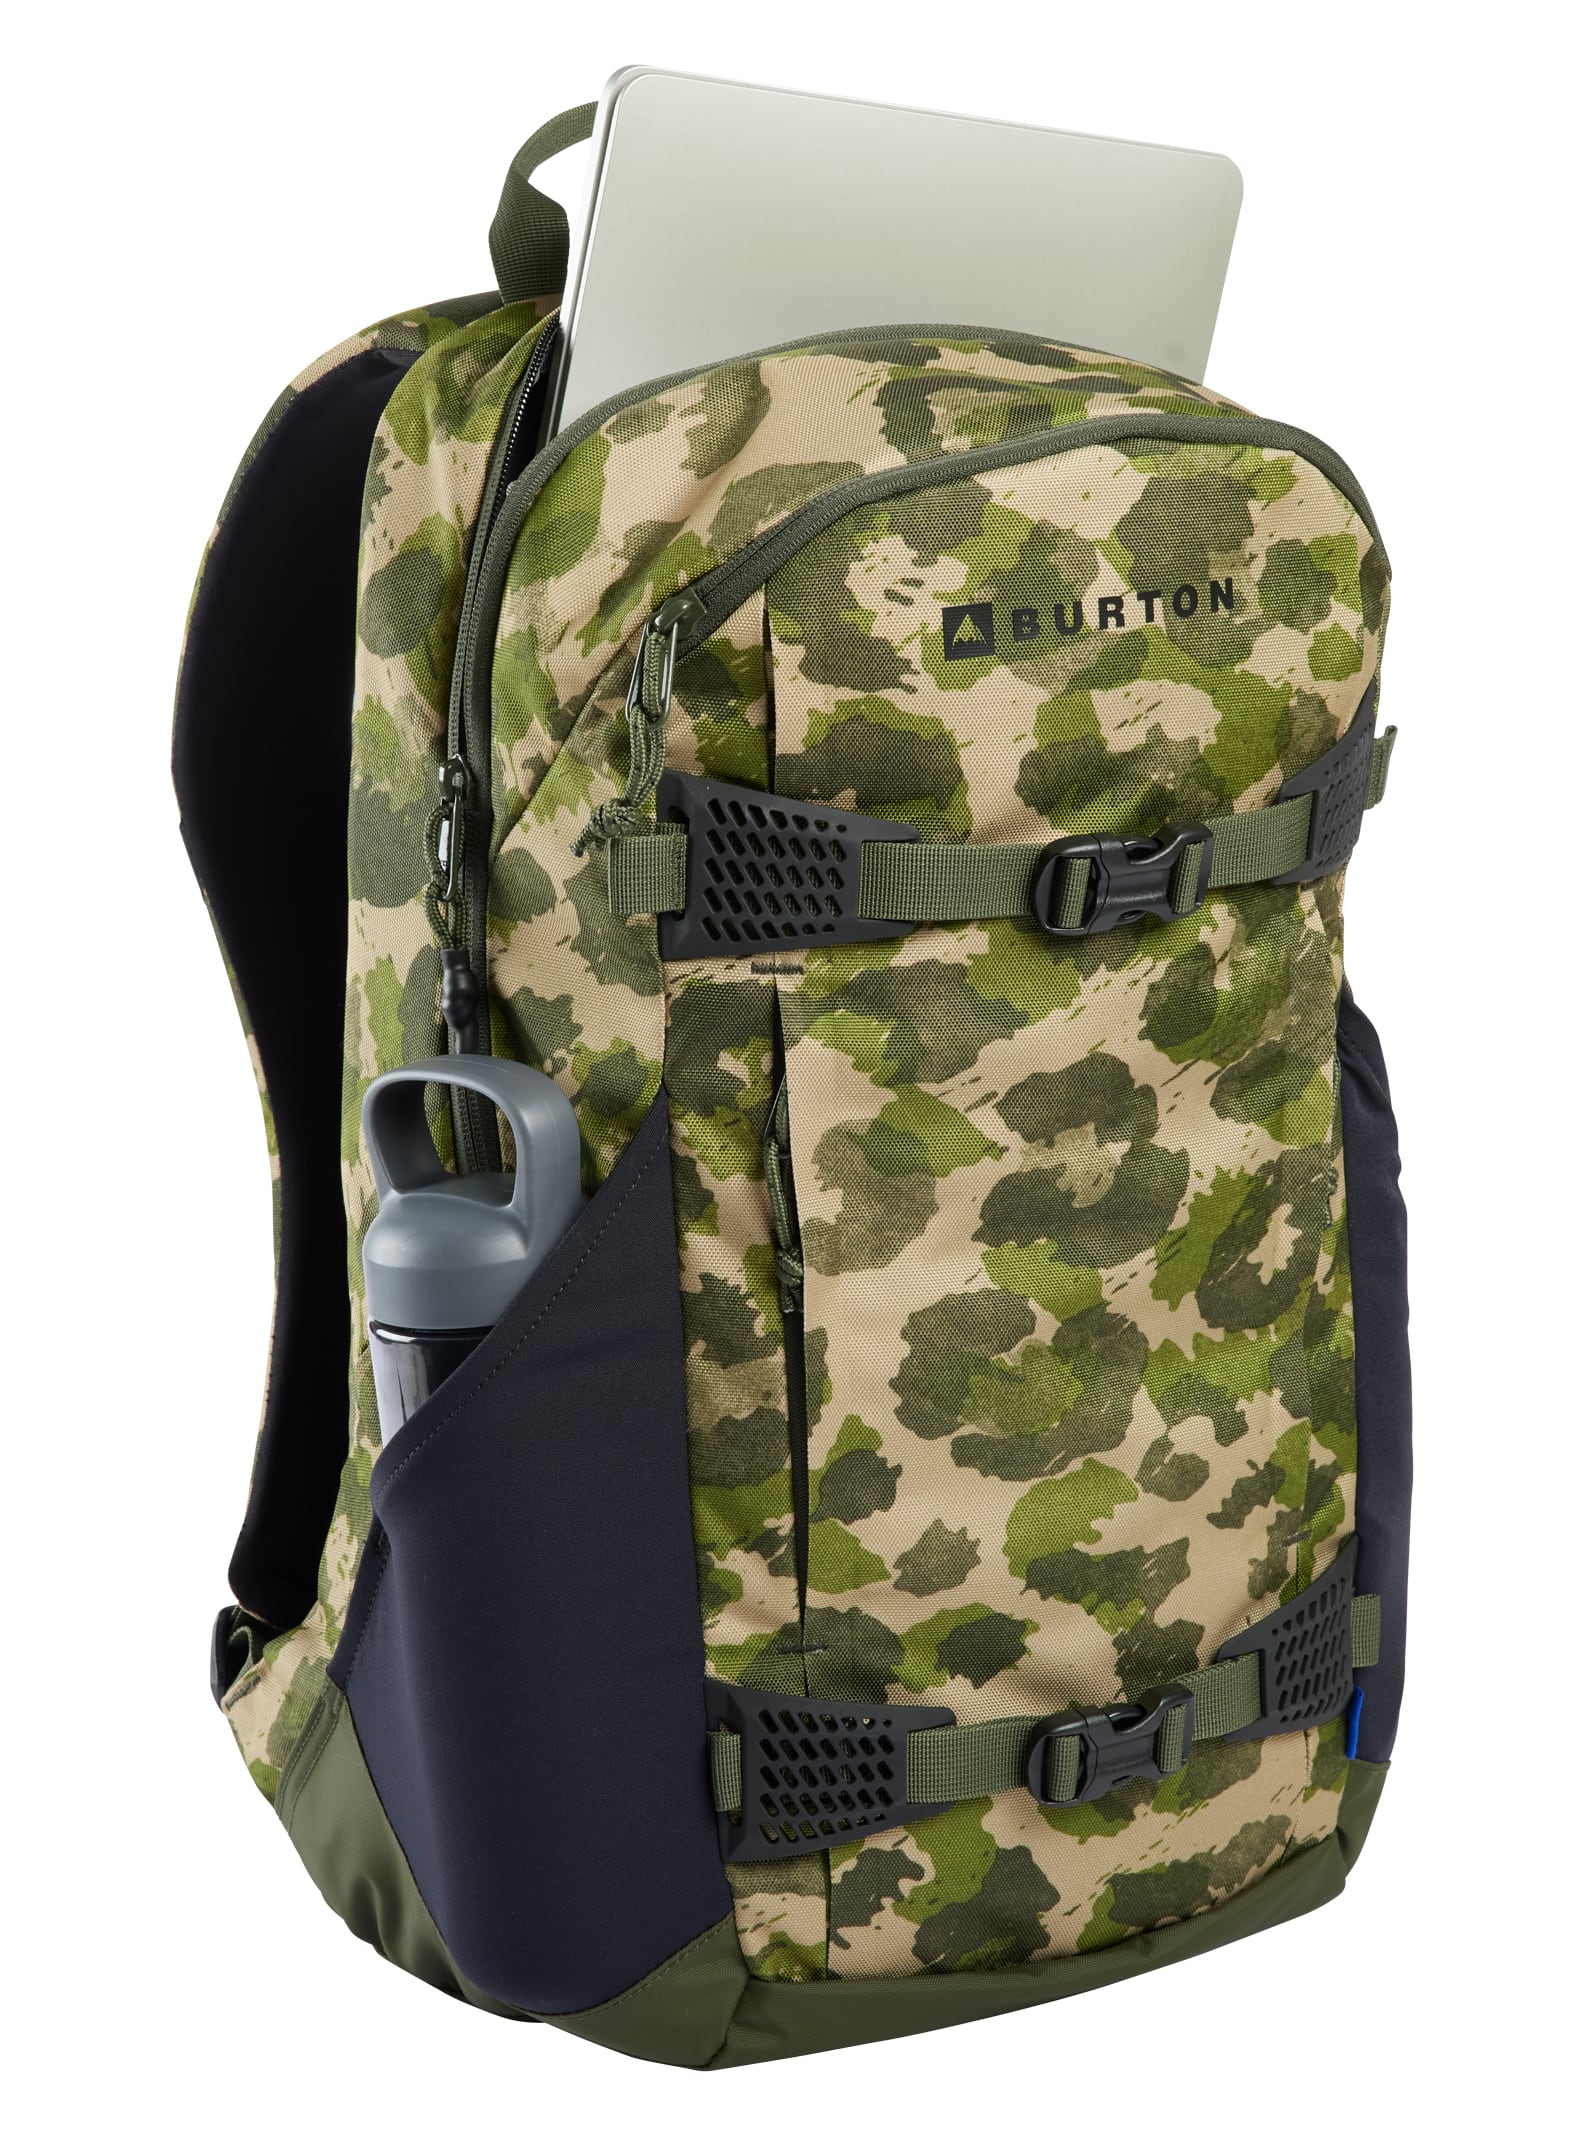 Day Hiker 25L Backpack | Burton.com Winter 2023 US